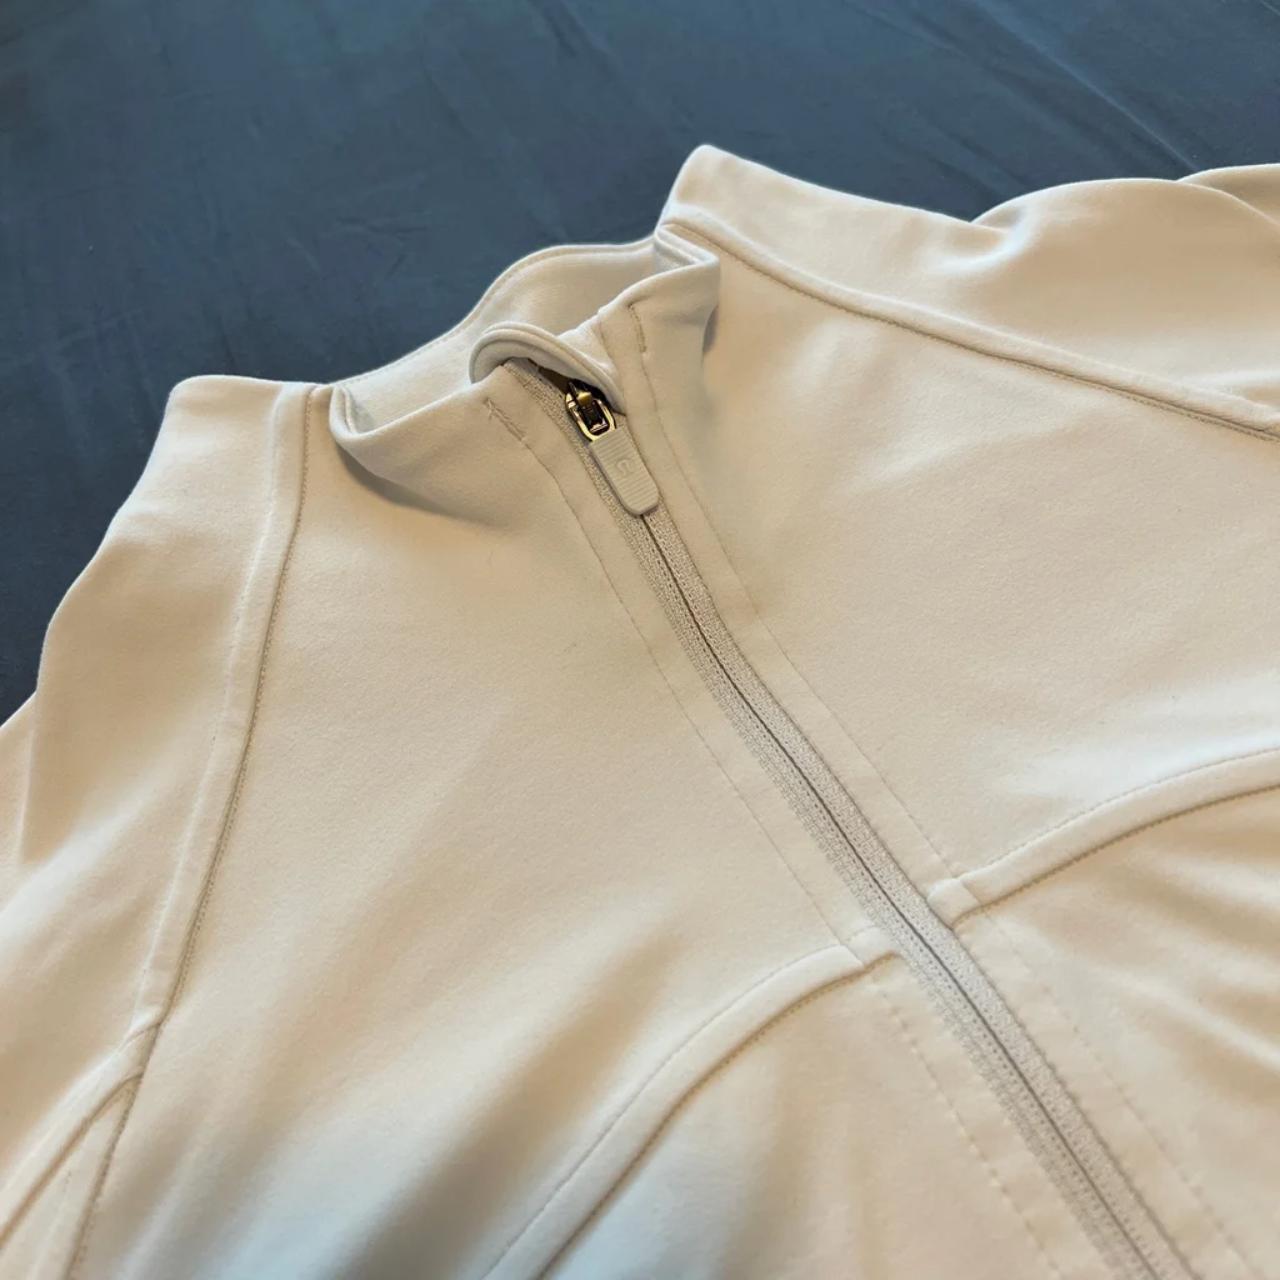 Lululemon Nulu Cropped Define Jacket in White Opal - Depop